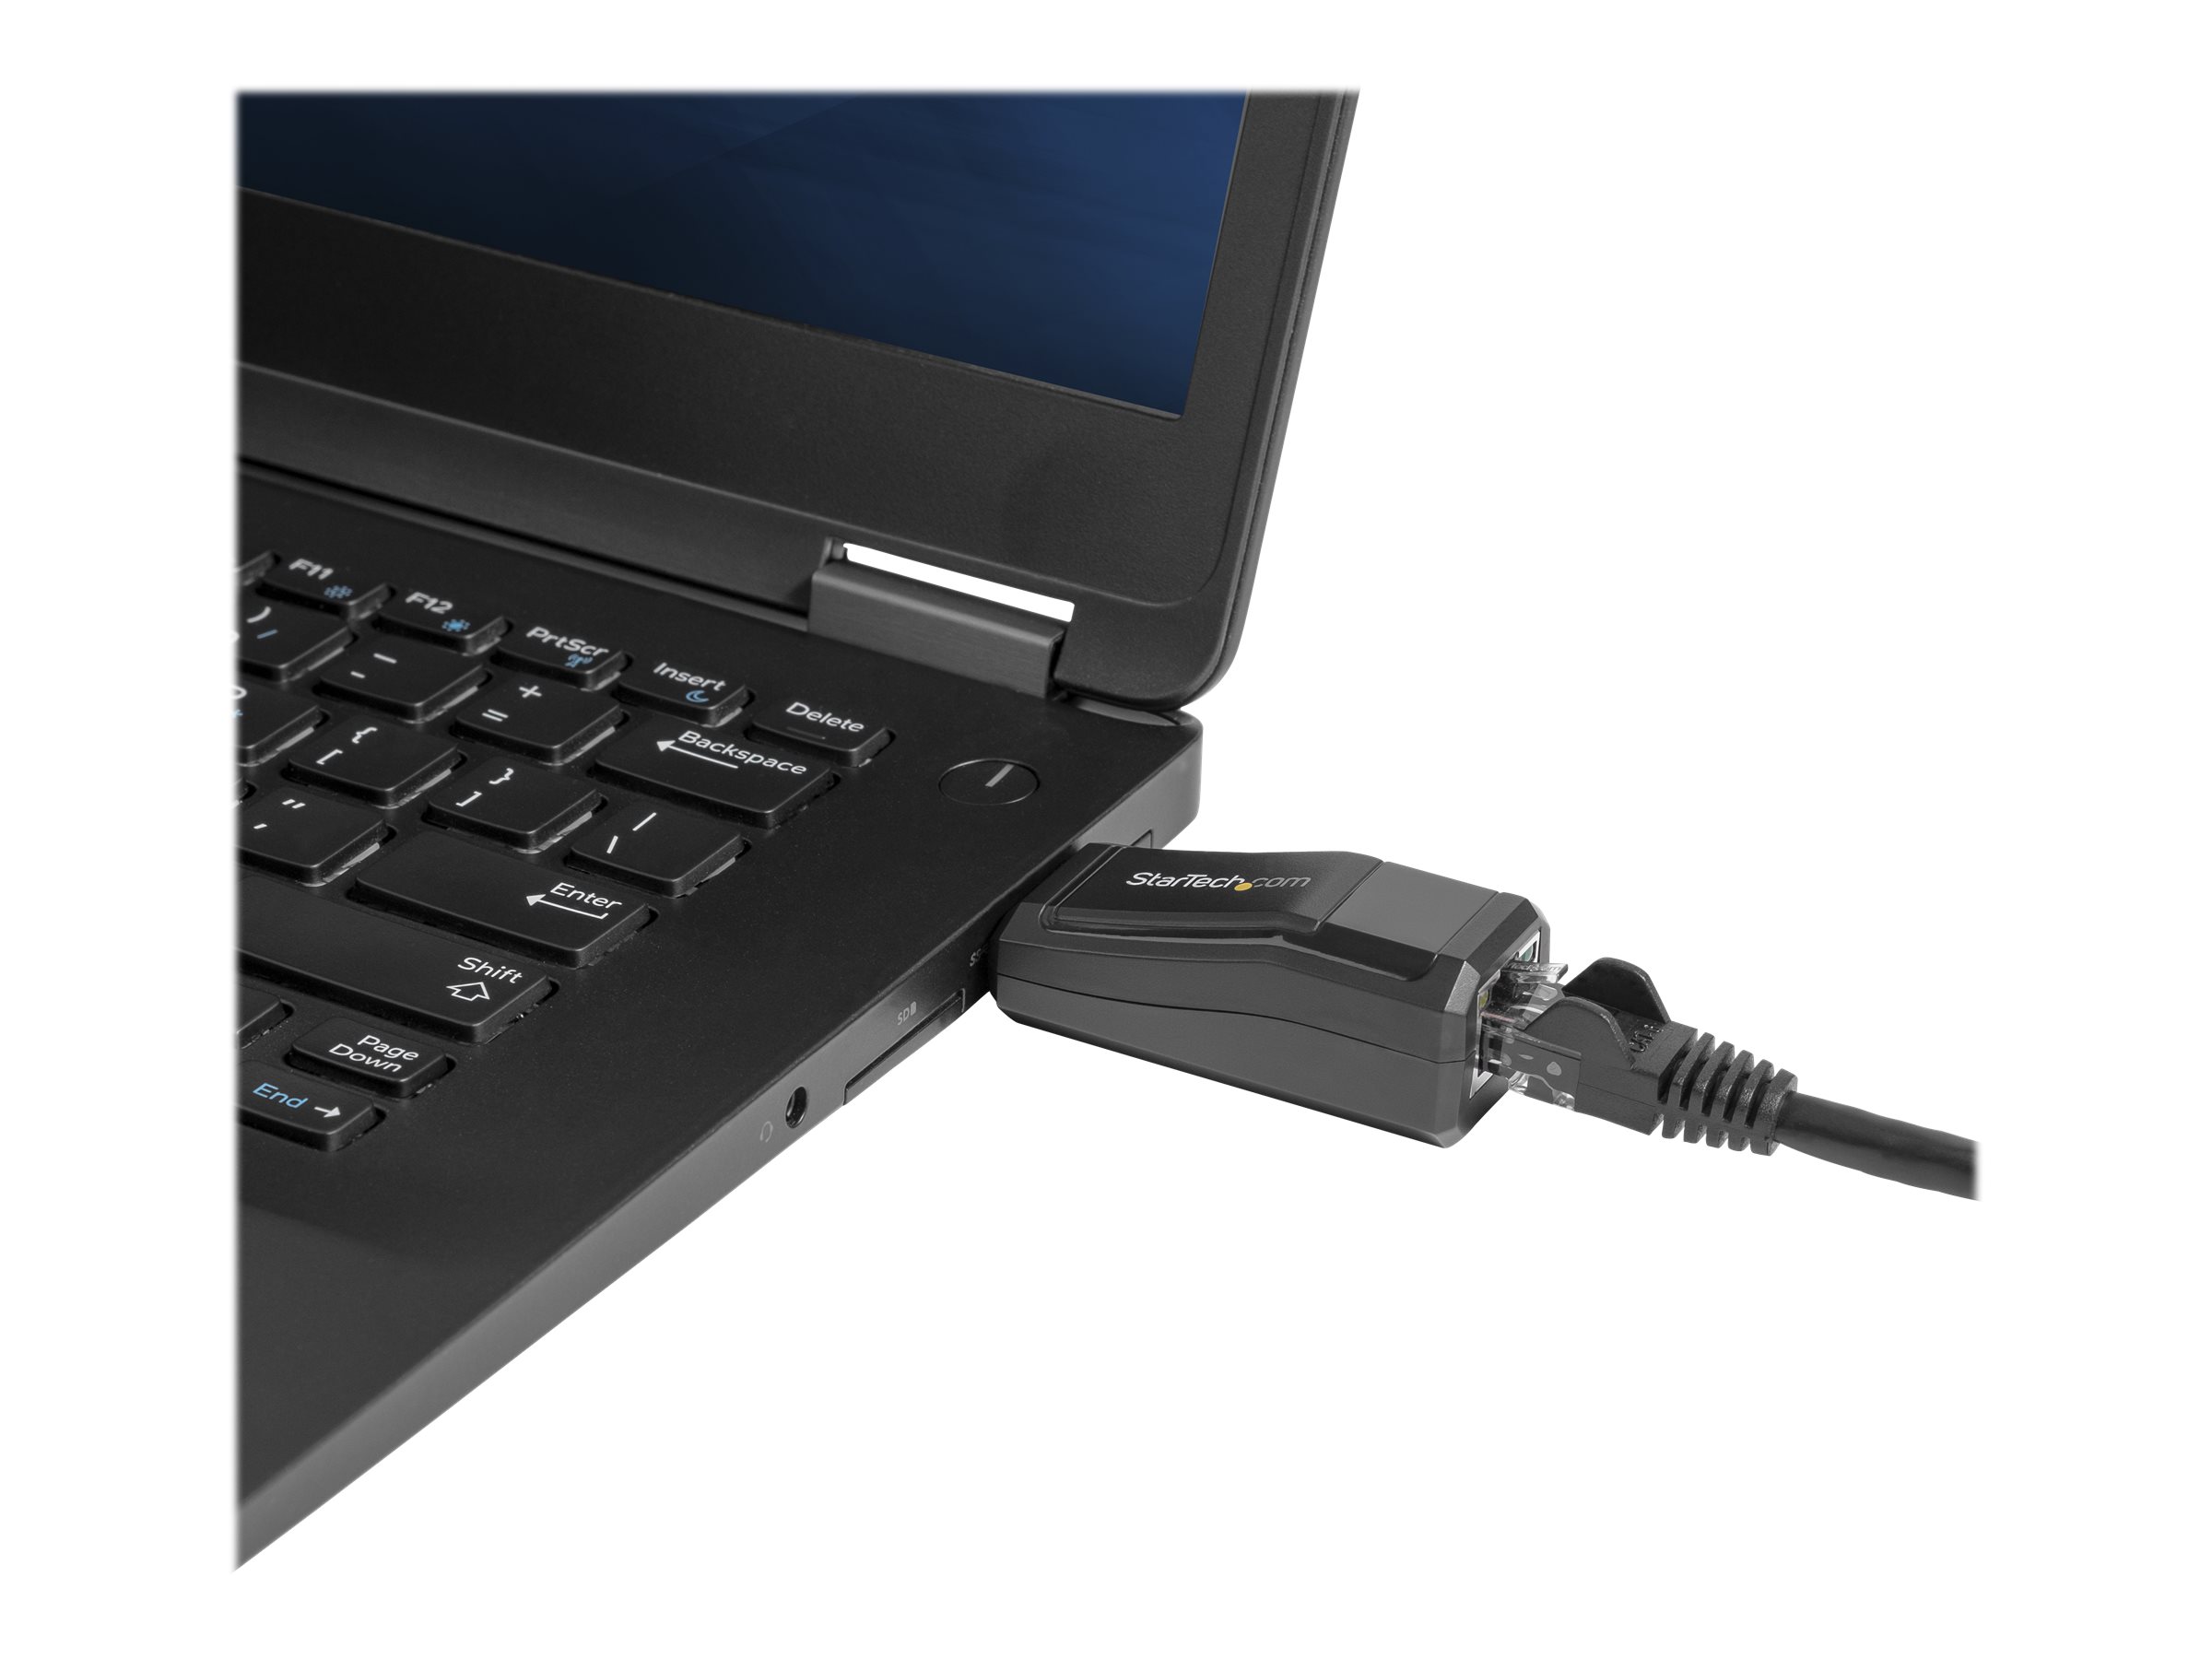 StarTech.com Réseau adaptateur USB 3.0 vers Gigabit Ethernet - NIC USB vers RJ45 pour réseau 10/100/1000 - Adaptateur réseau - USB 3.0 - Gigabit Ethernet - noir - USB31000NDS - Cartes réseau USB